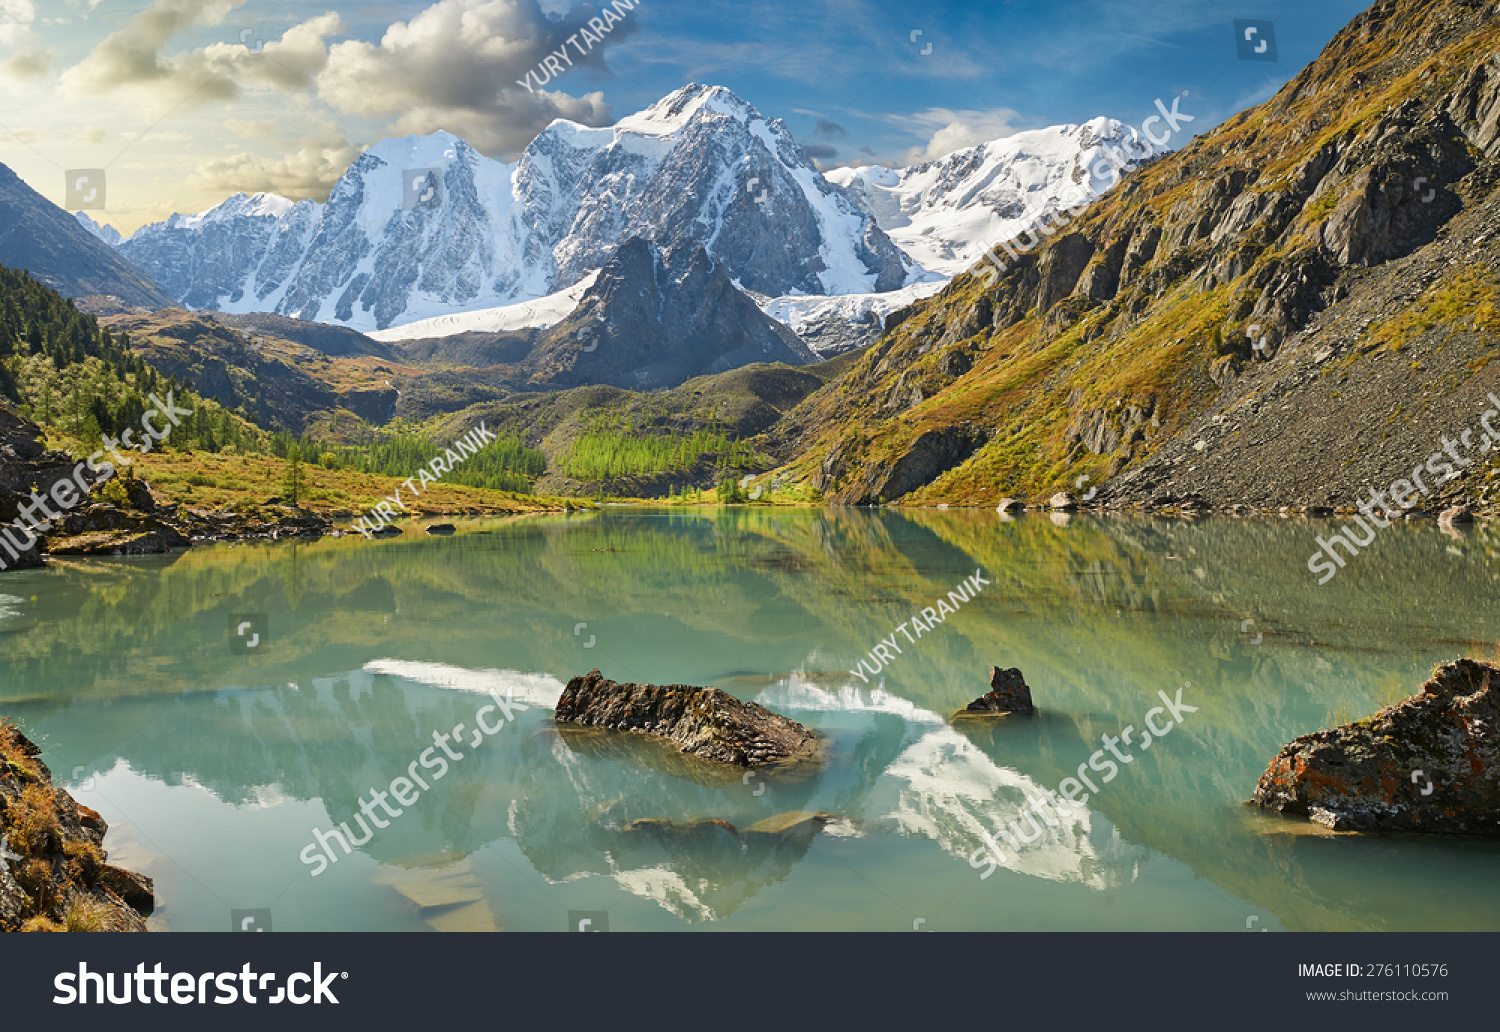 Mountain lake, Russia, Siberia, Altai mountains, Chuya ridge. #276110576